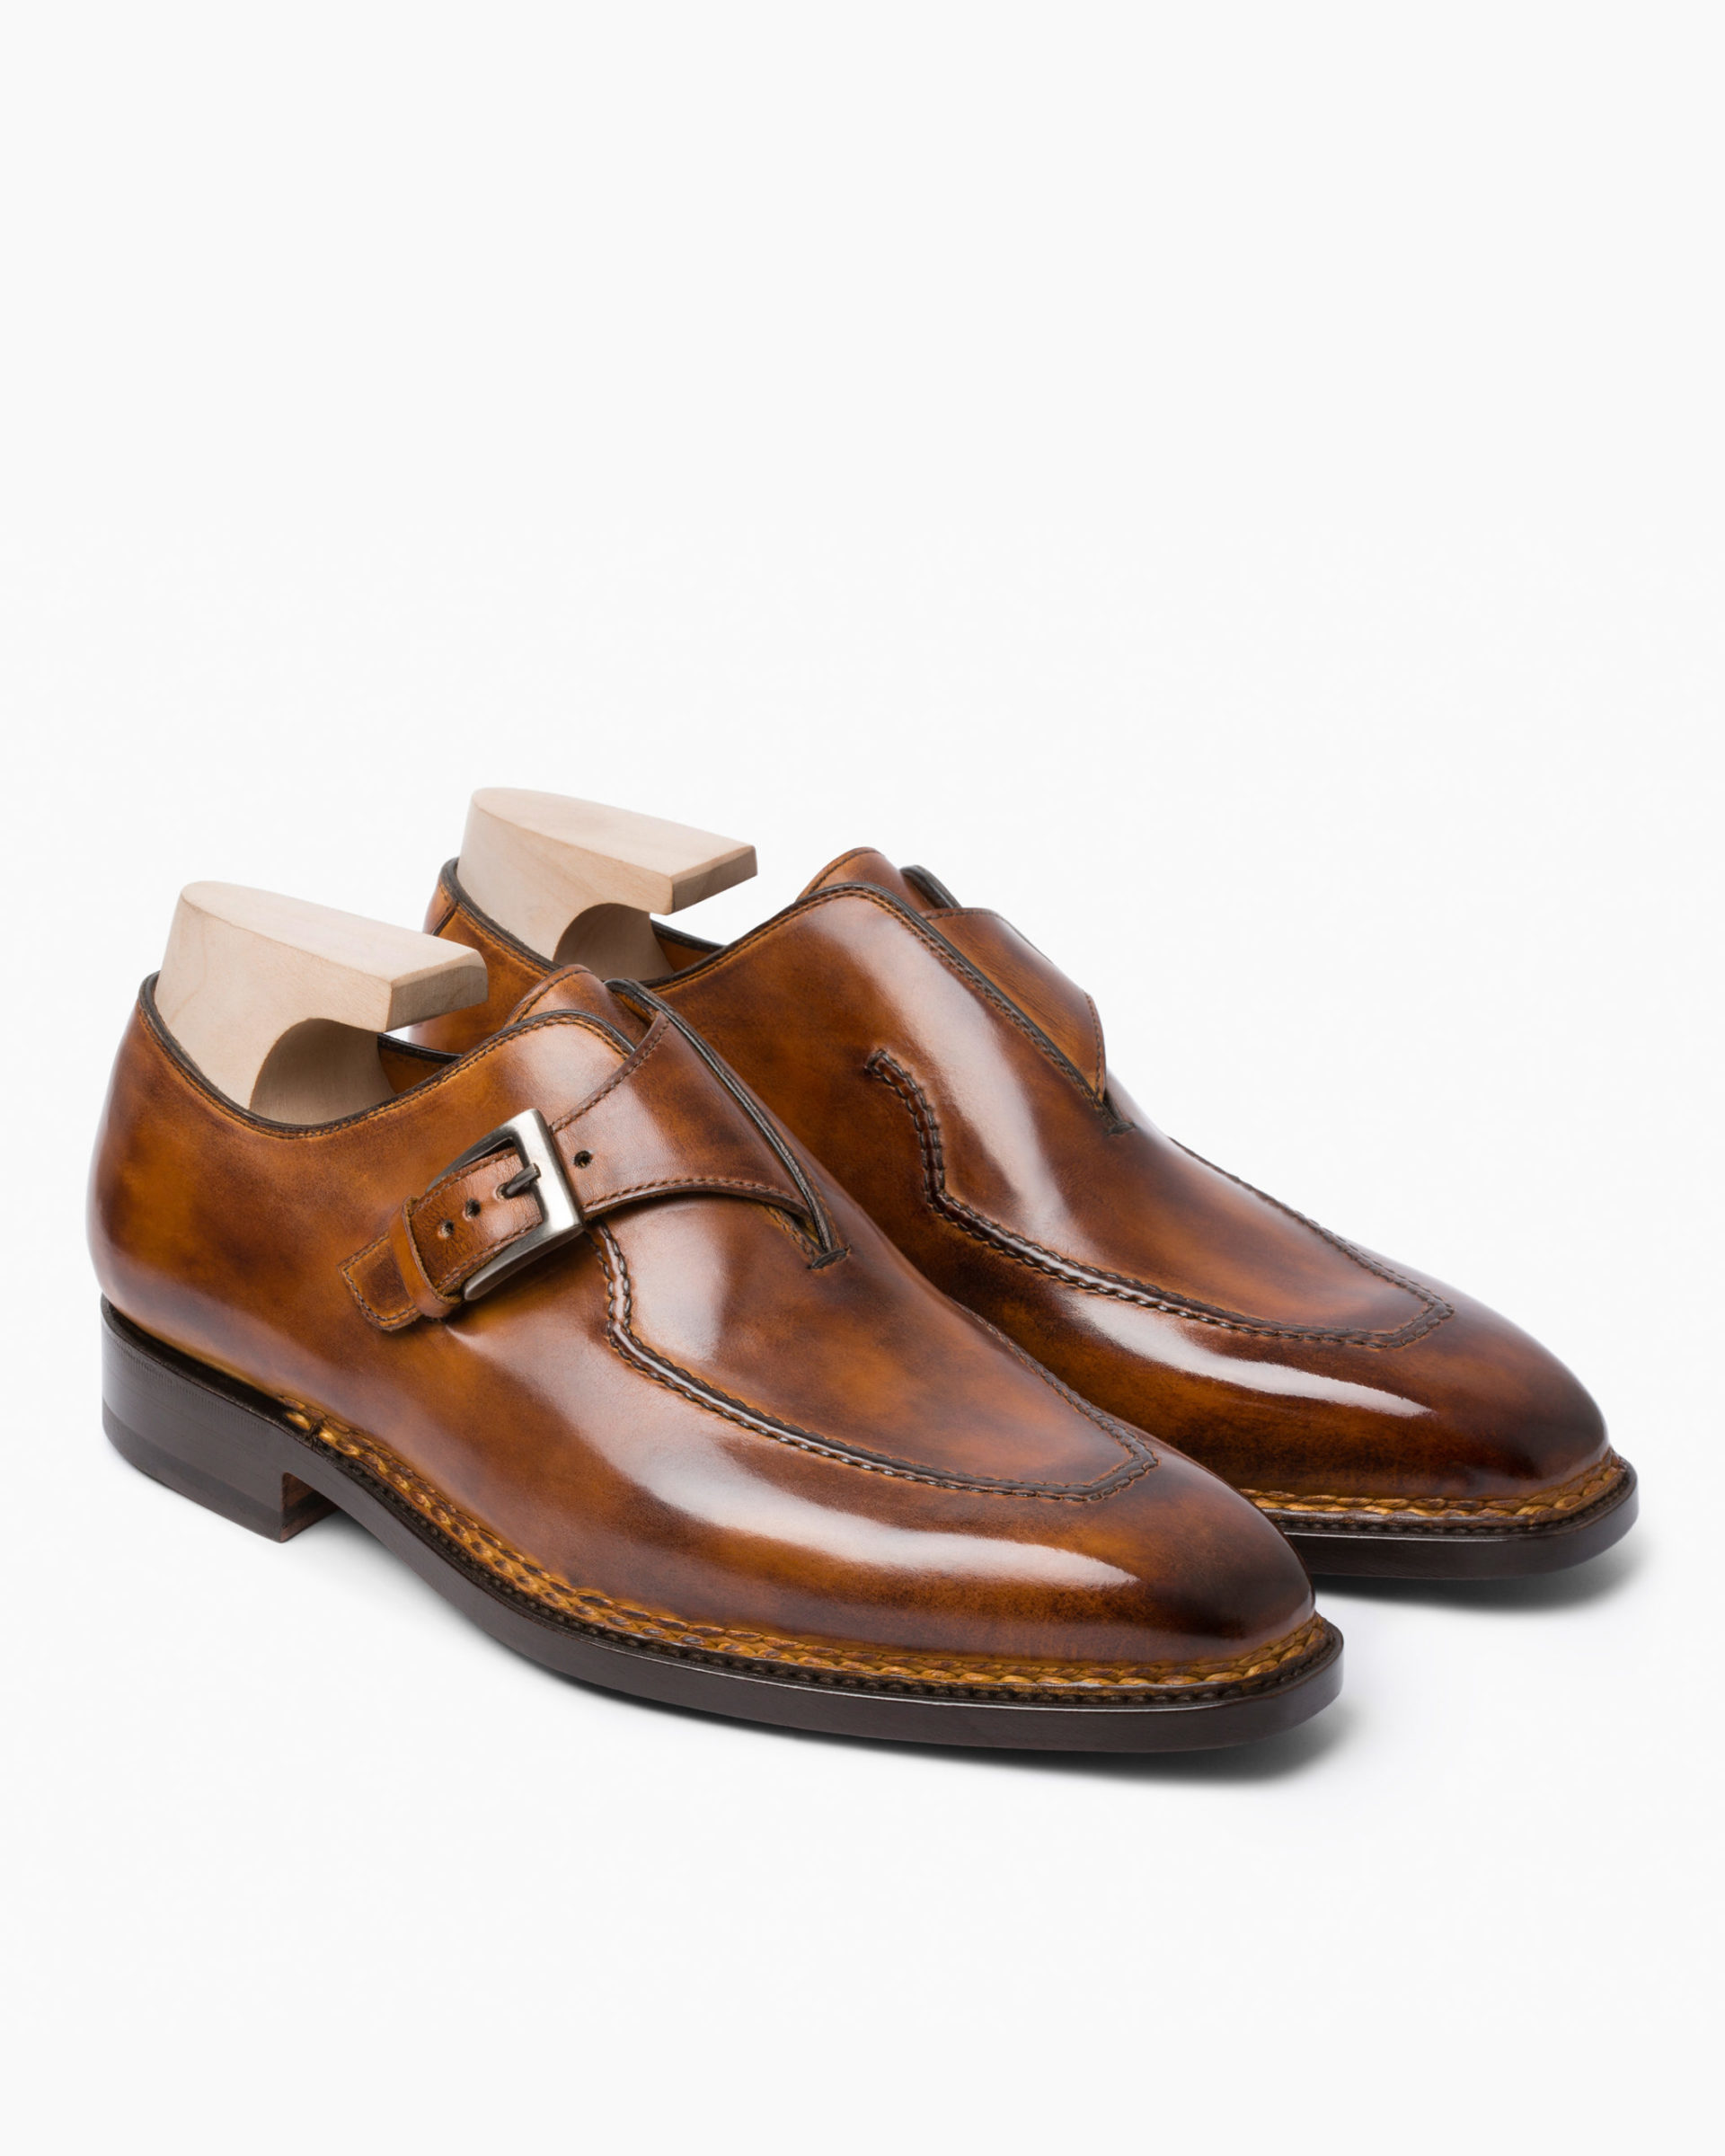 Brillantina - Bontoni: Handcrafted Italian Men's Shoes